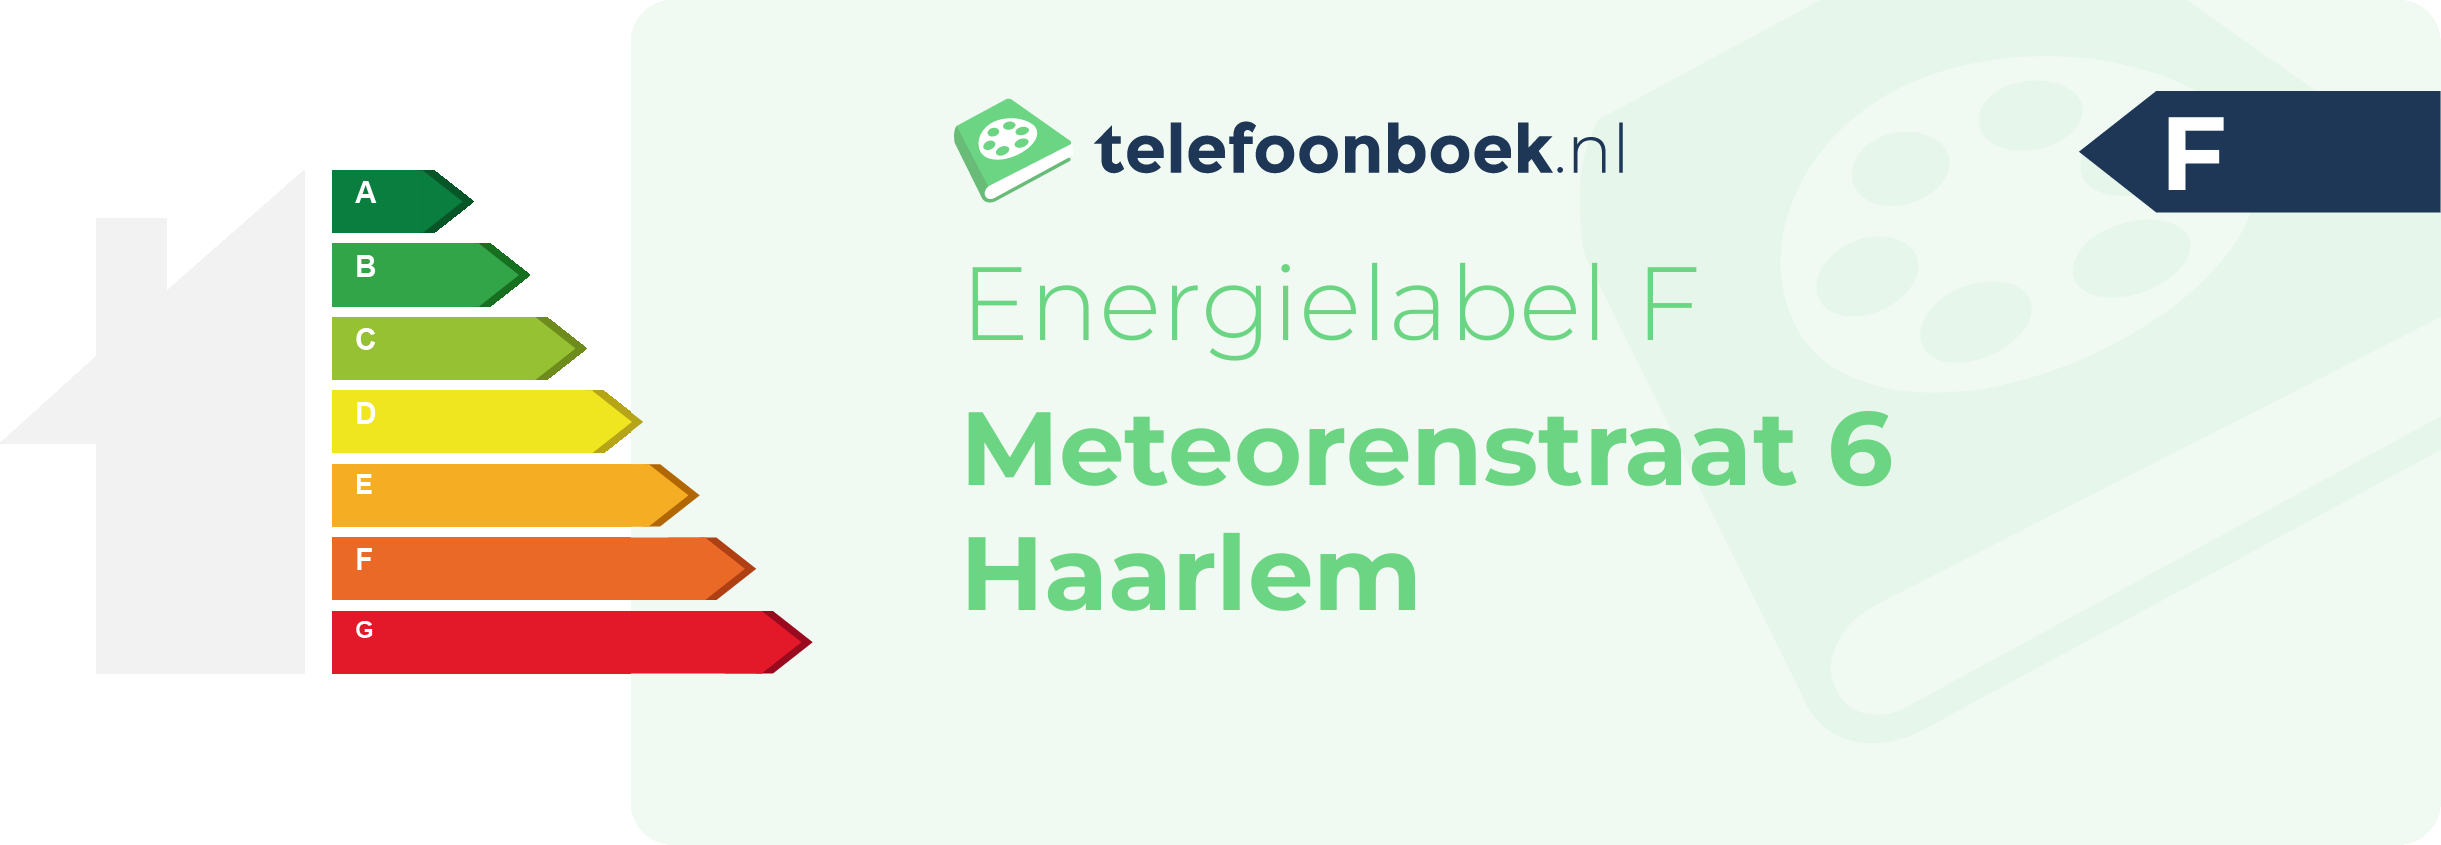 Energielabel Meteorenstraat 6 Haarlem